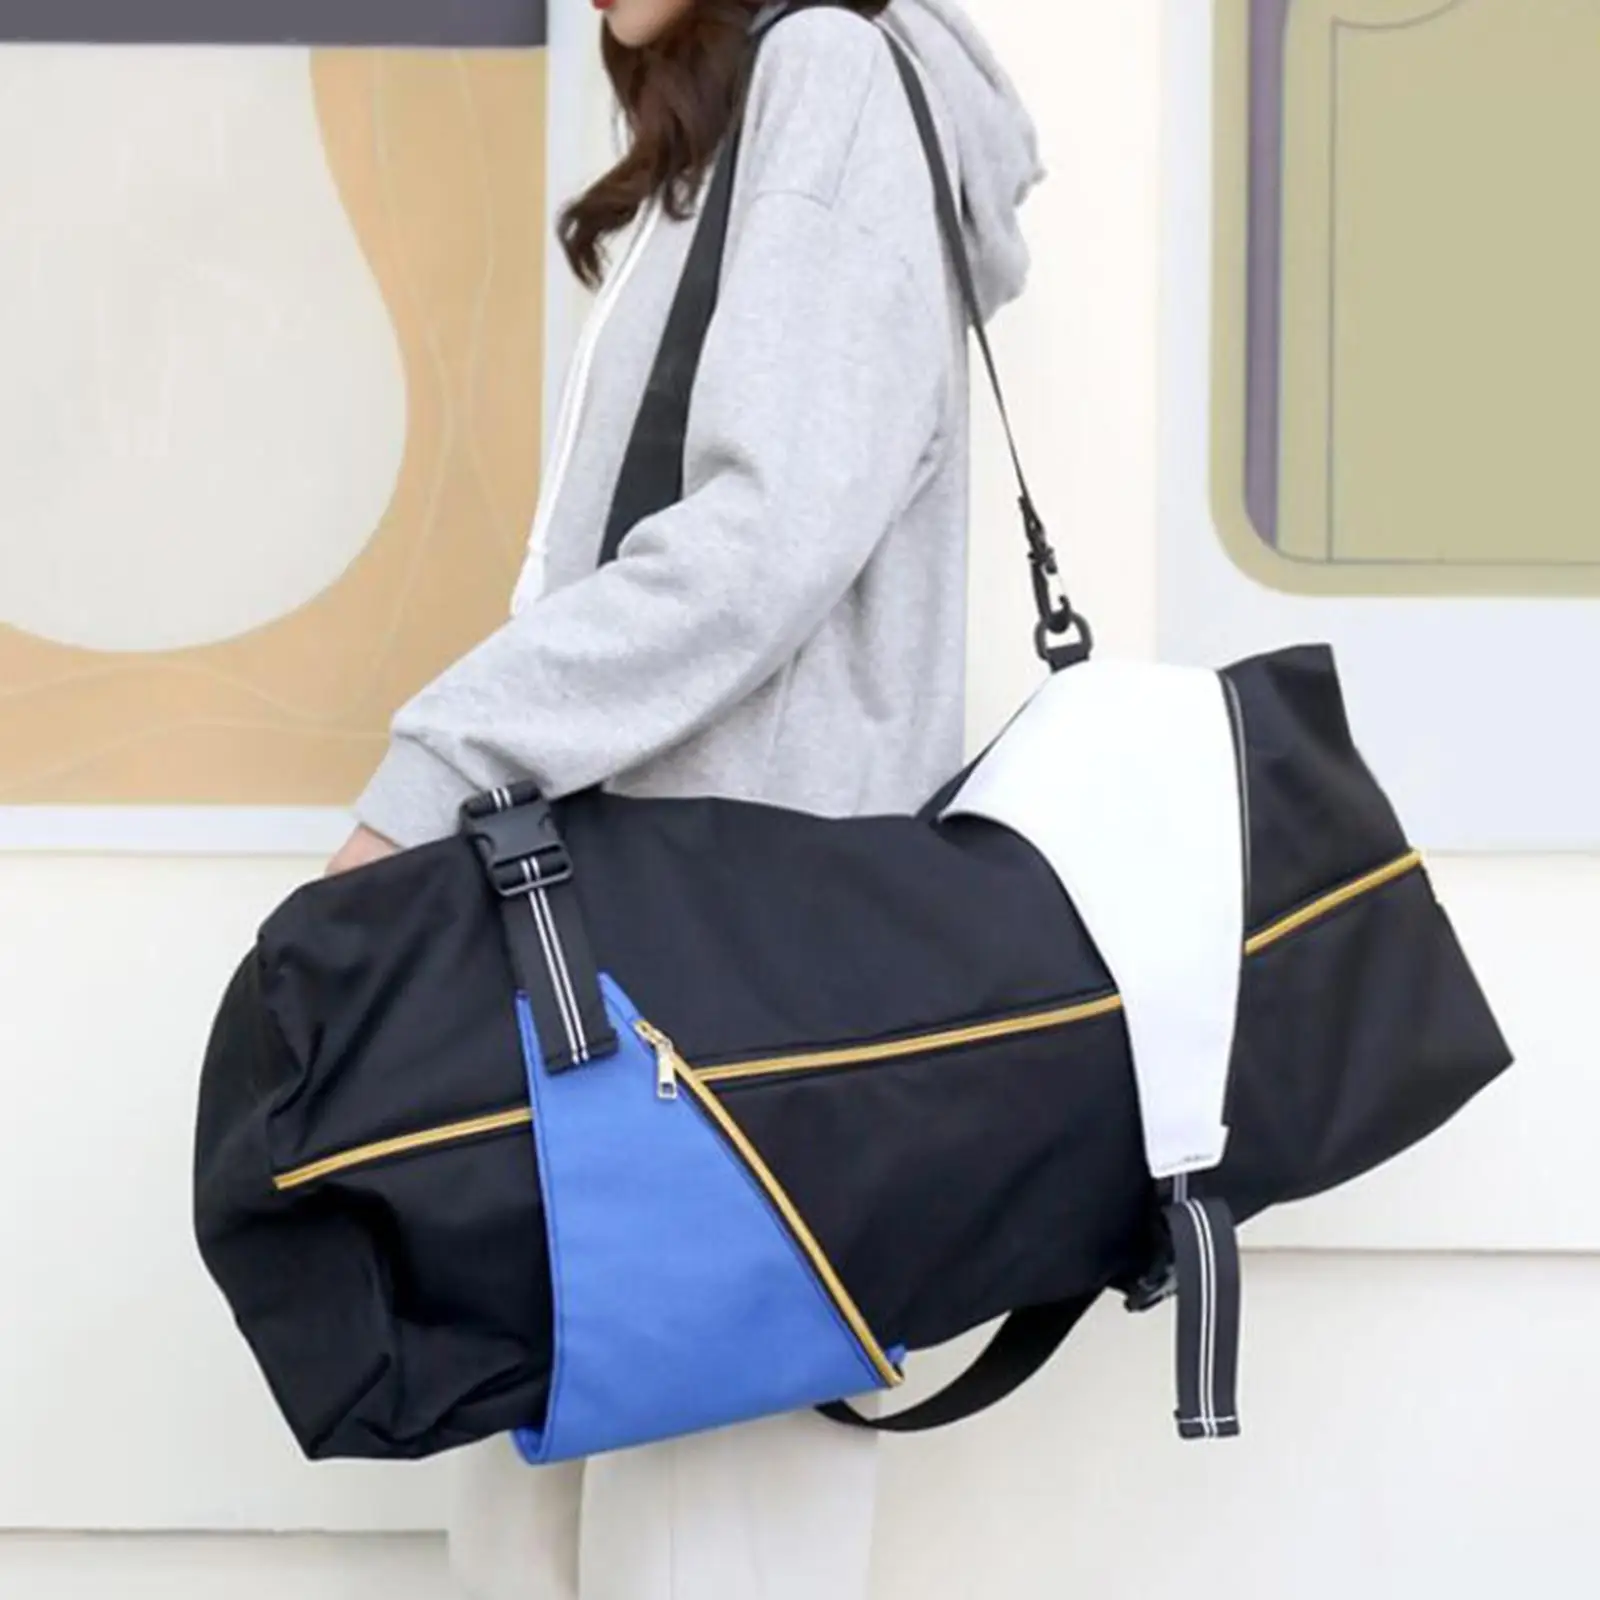 Skateboard Carry Bag Holder Skate Shoulder Bag Travel Protective Cover Travel Accessories Longboard Carrier for Men Women